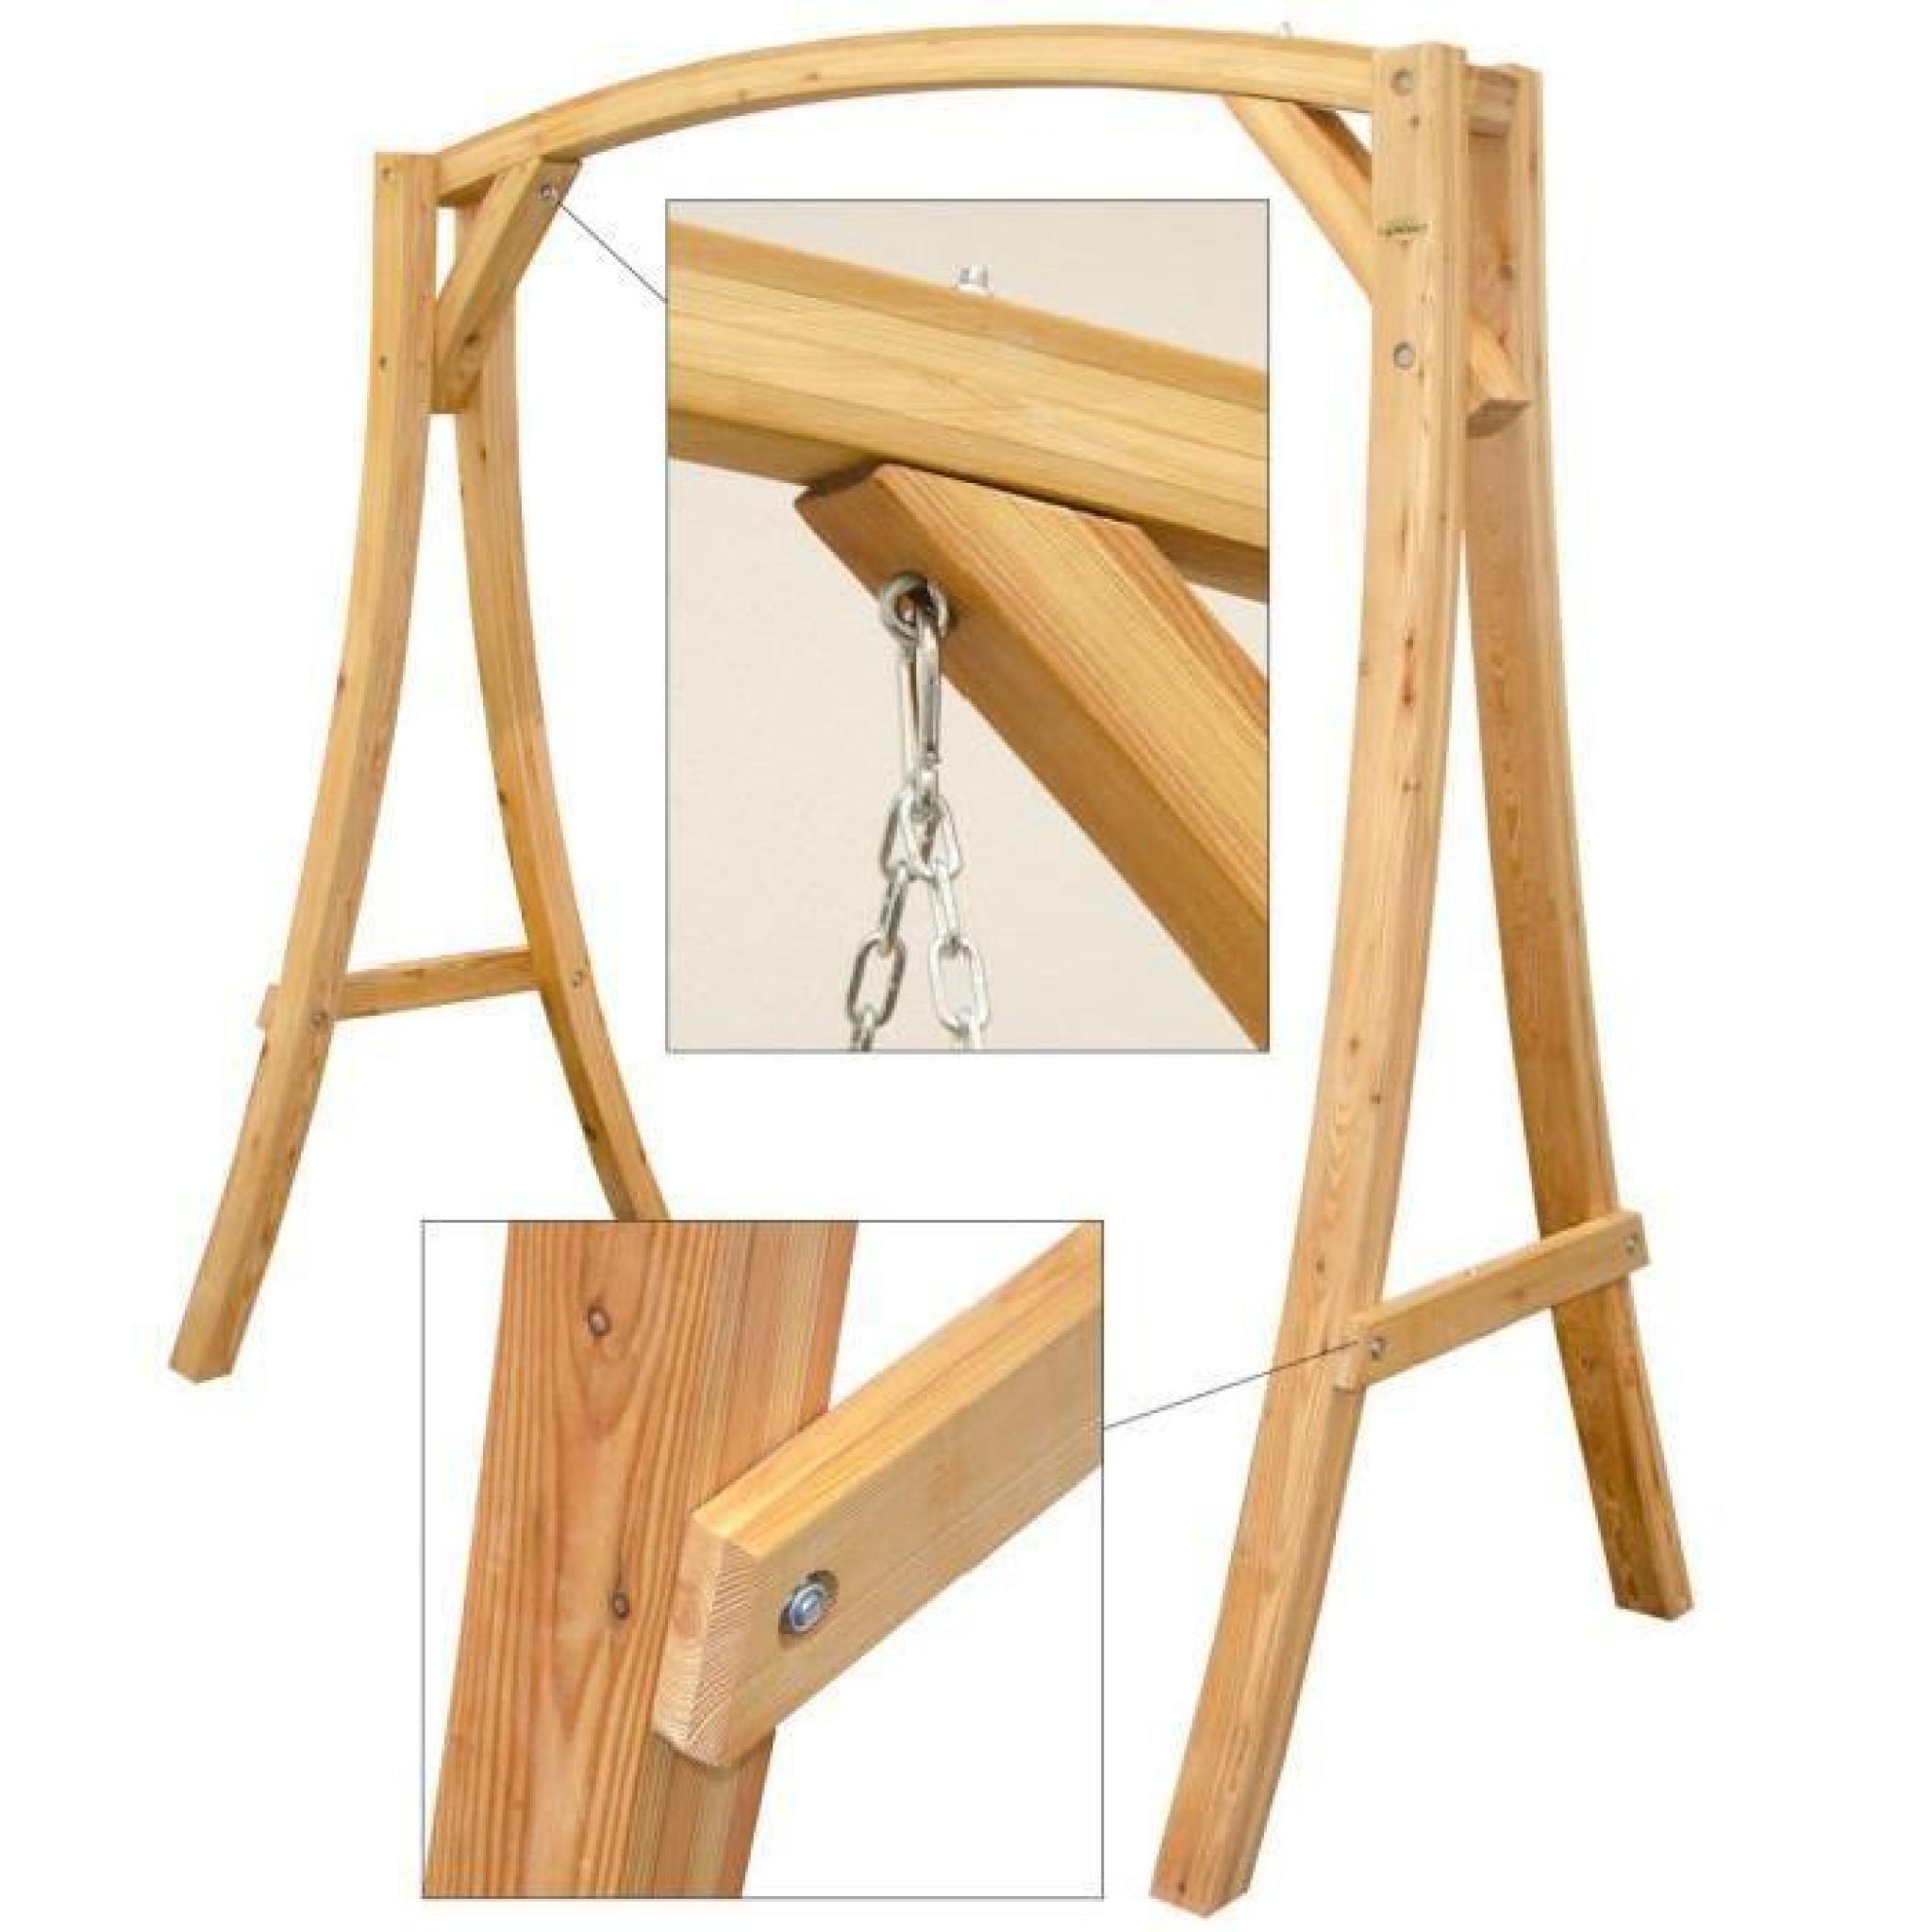 SUPPORT en bois de mélèze pour balancelles env 205x105x198cm | pour l'intérieur et l'extérieur de la maison | SIÈGE NON INCLUS pas cher